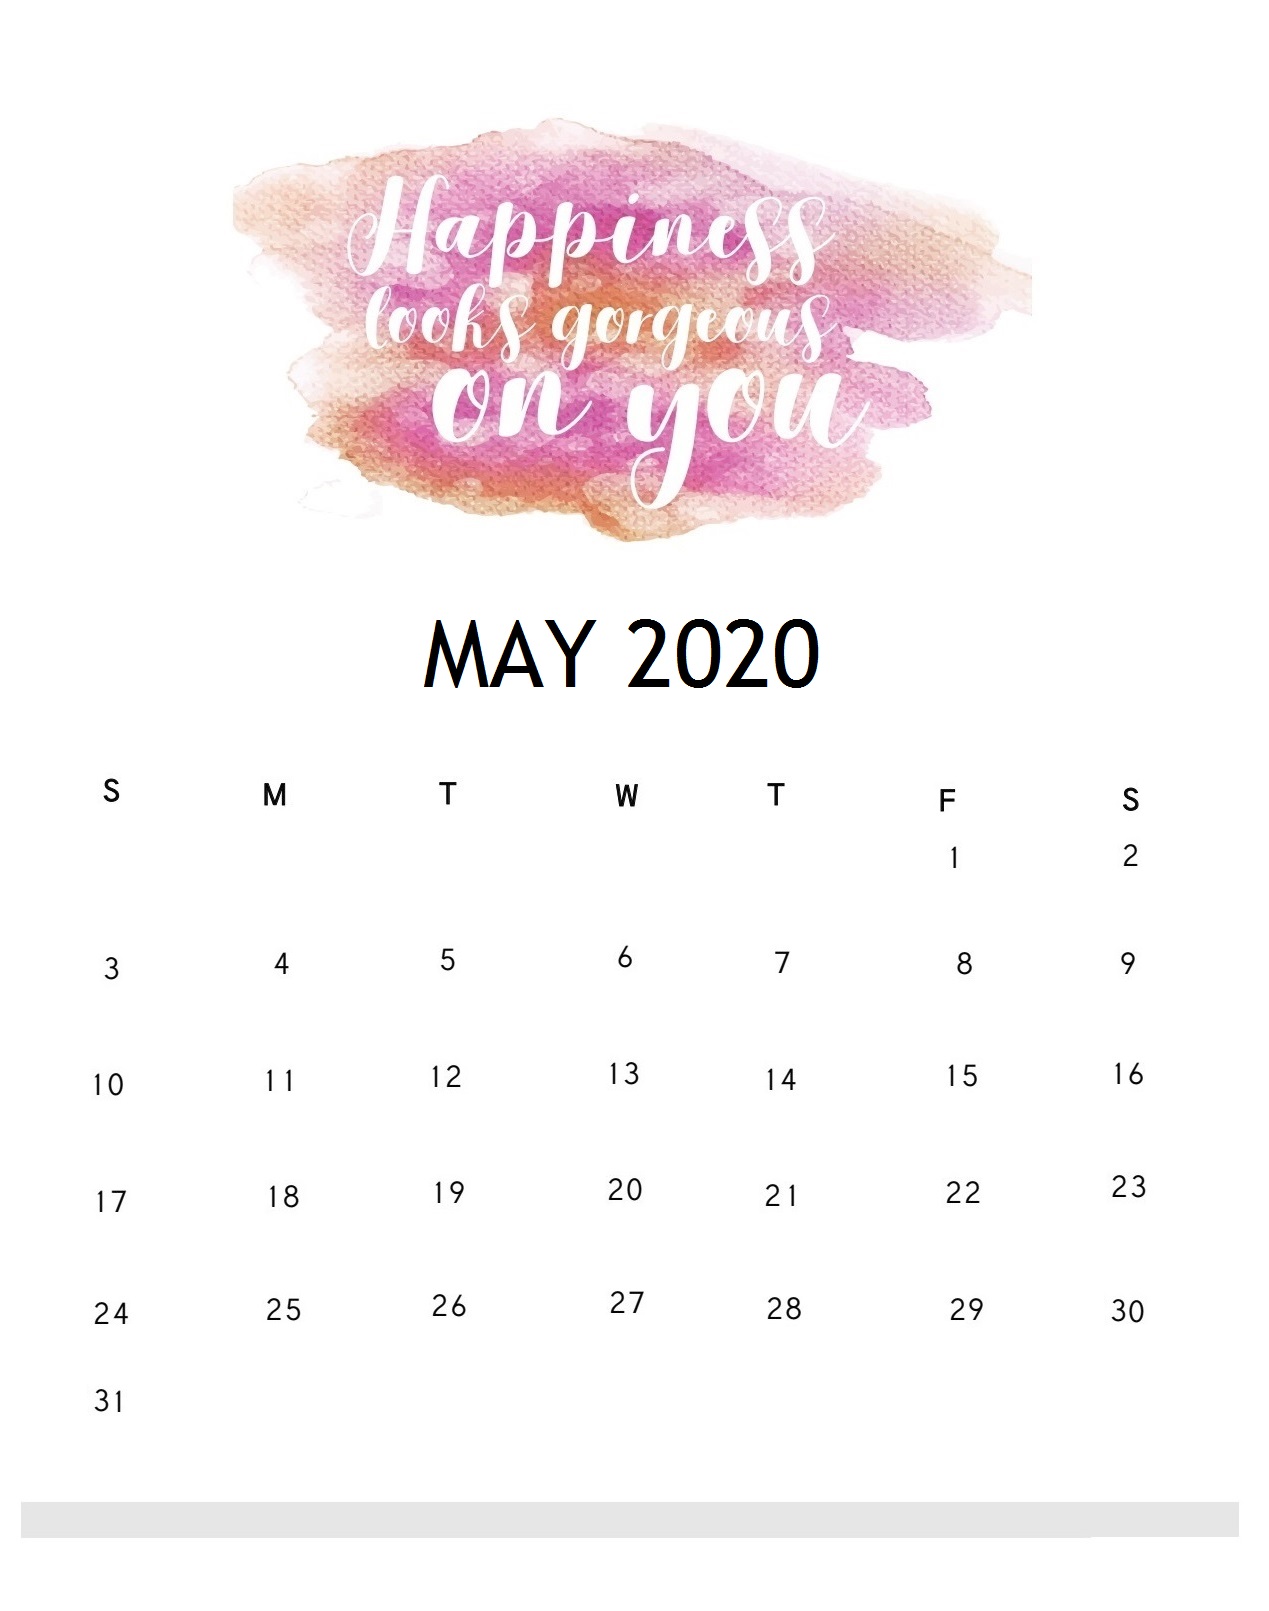 Inspiring May 2020 Quotes Calendar